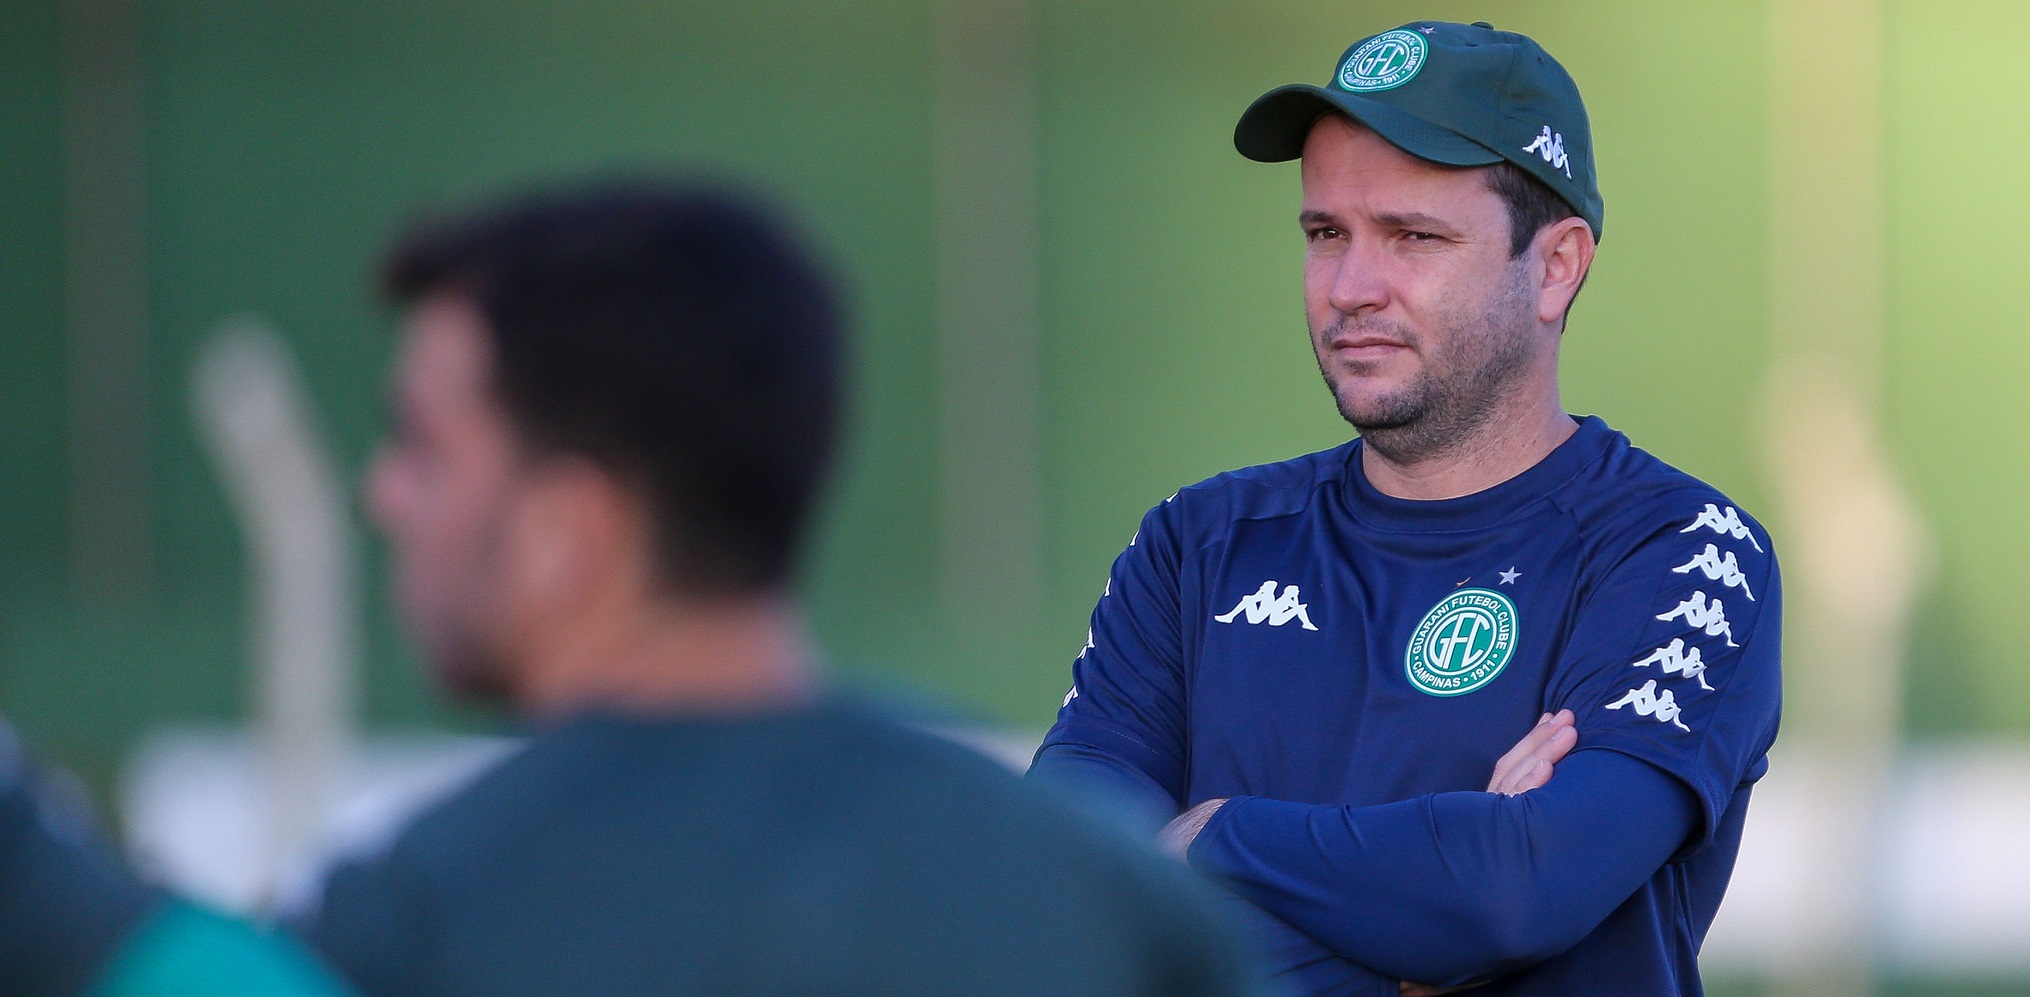 Série B: Daniel Paulista lamenta jogo apático do Guarani após empate: “Não estávamos nos melhores dias”